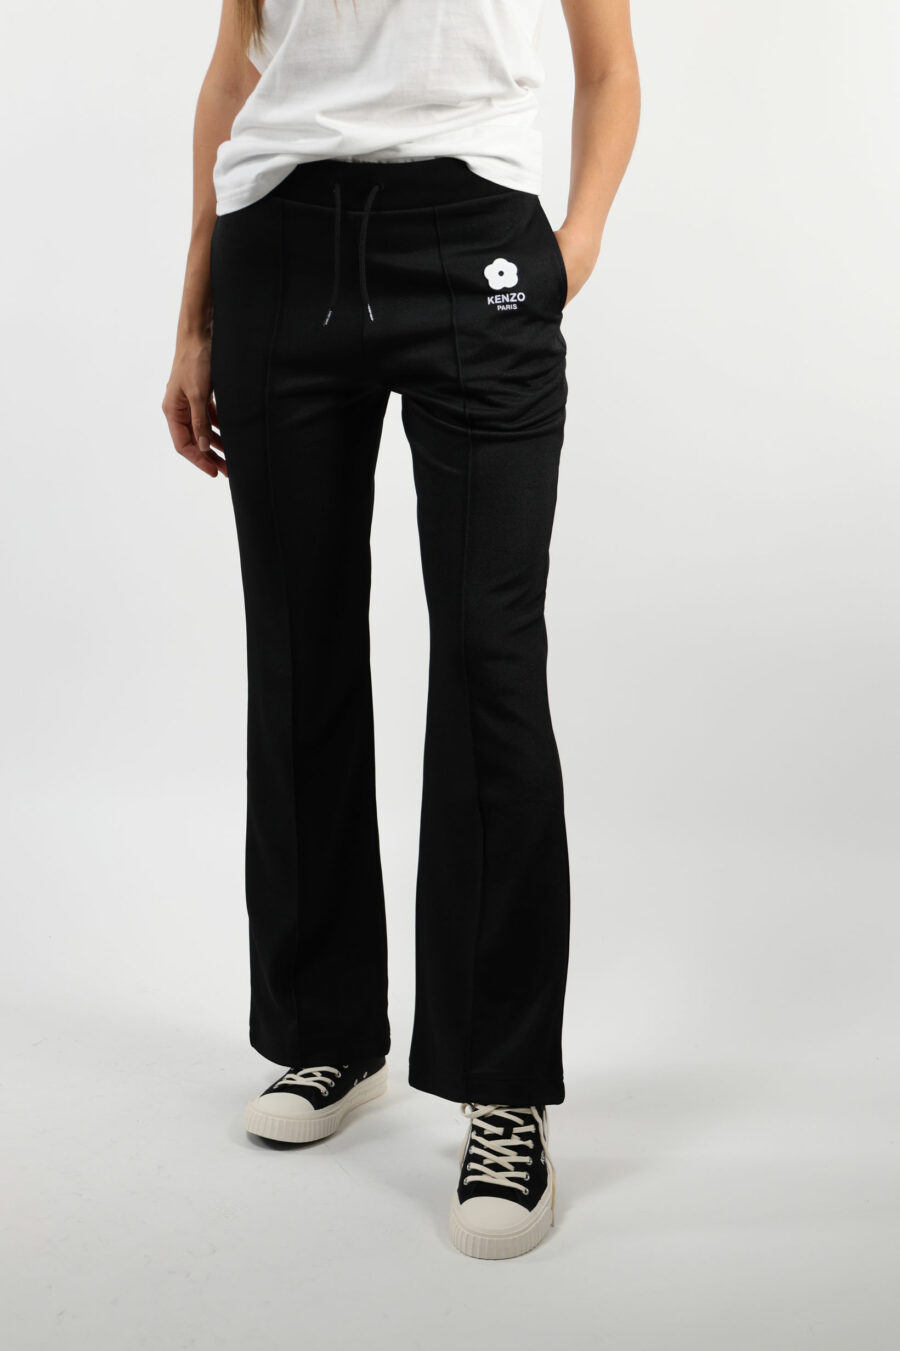 Pantalón de chándal negro con minilogo "boke flower" blanco - 109501